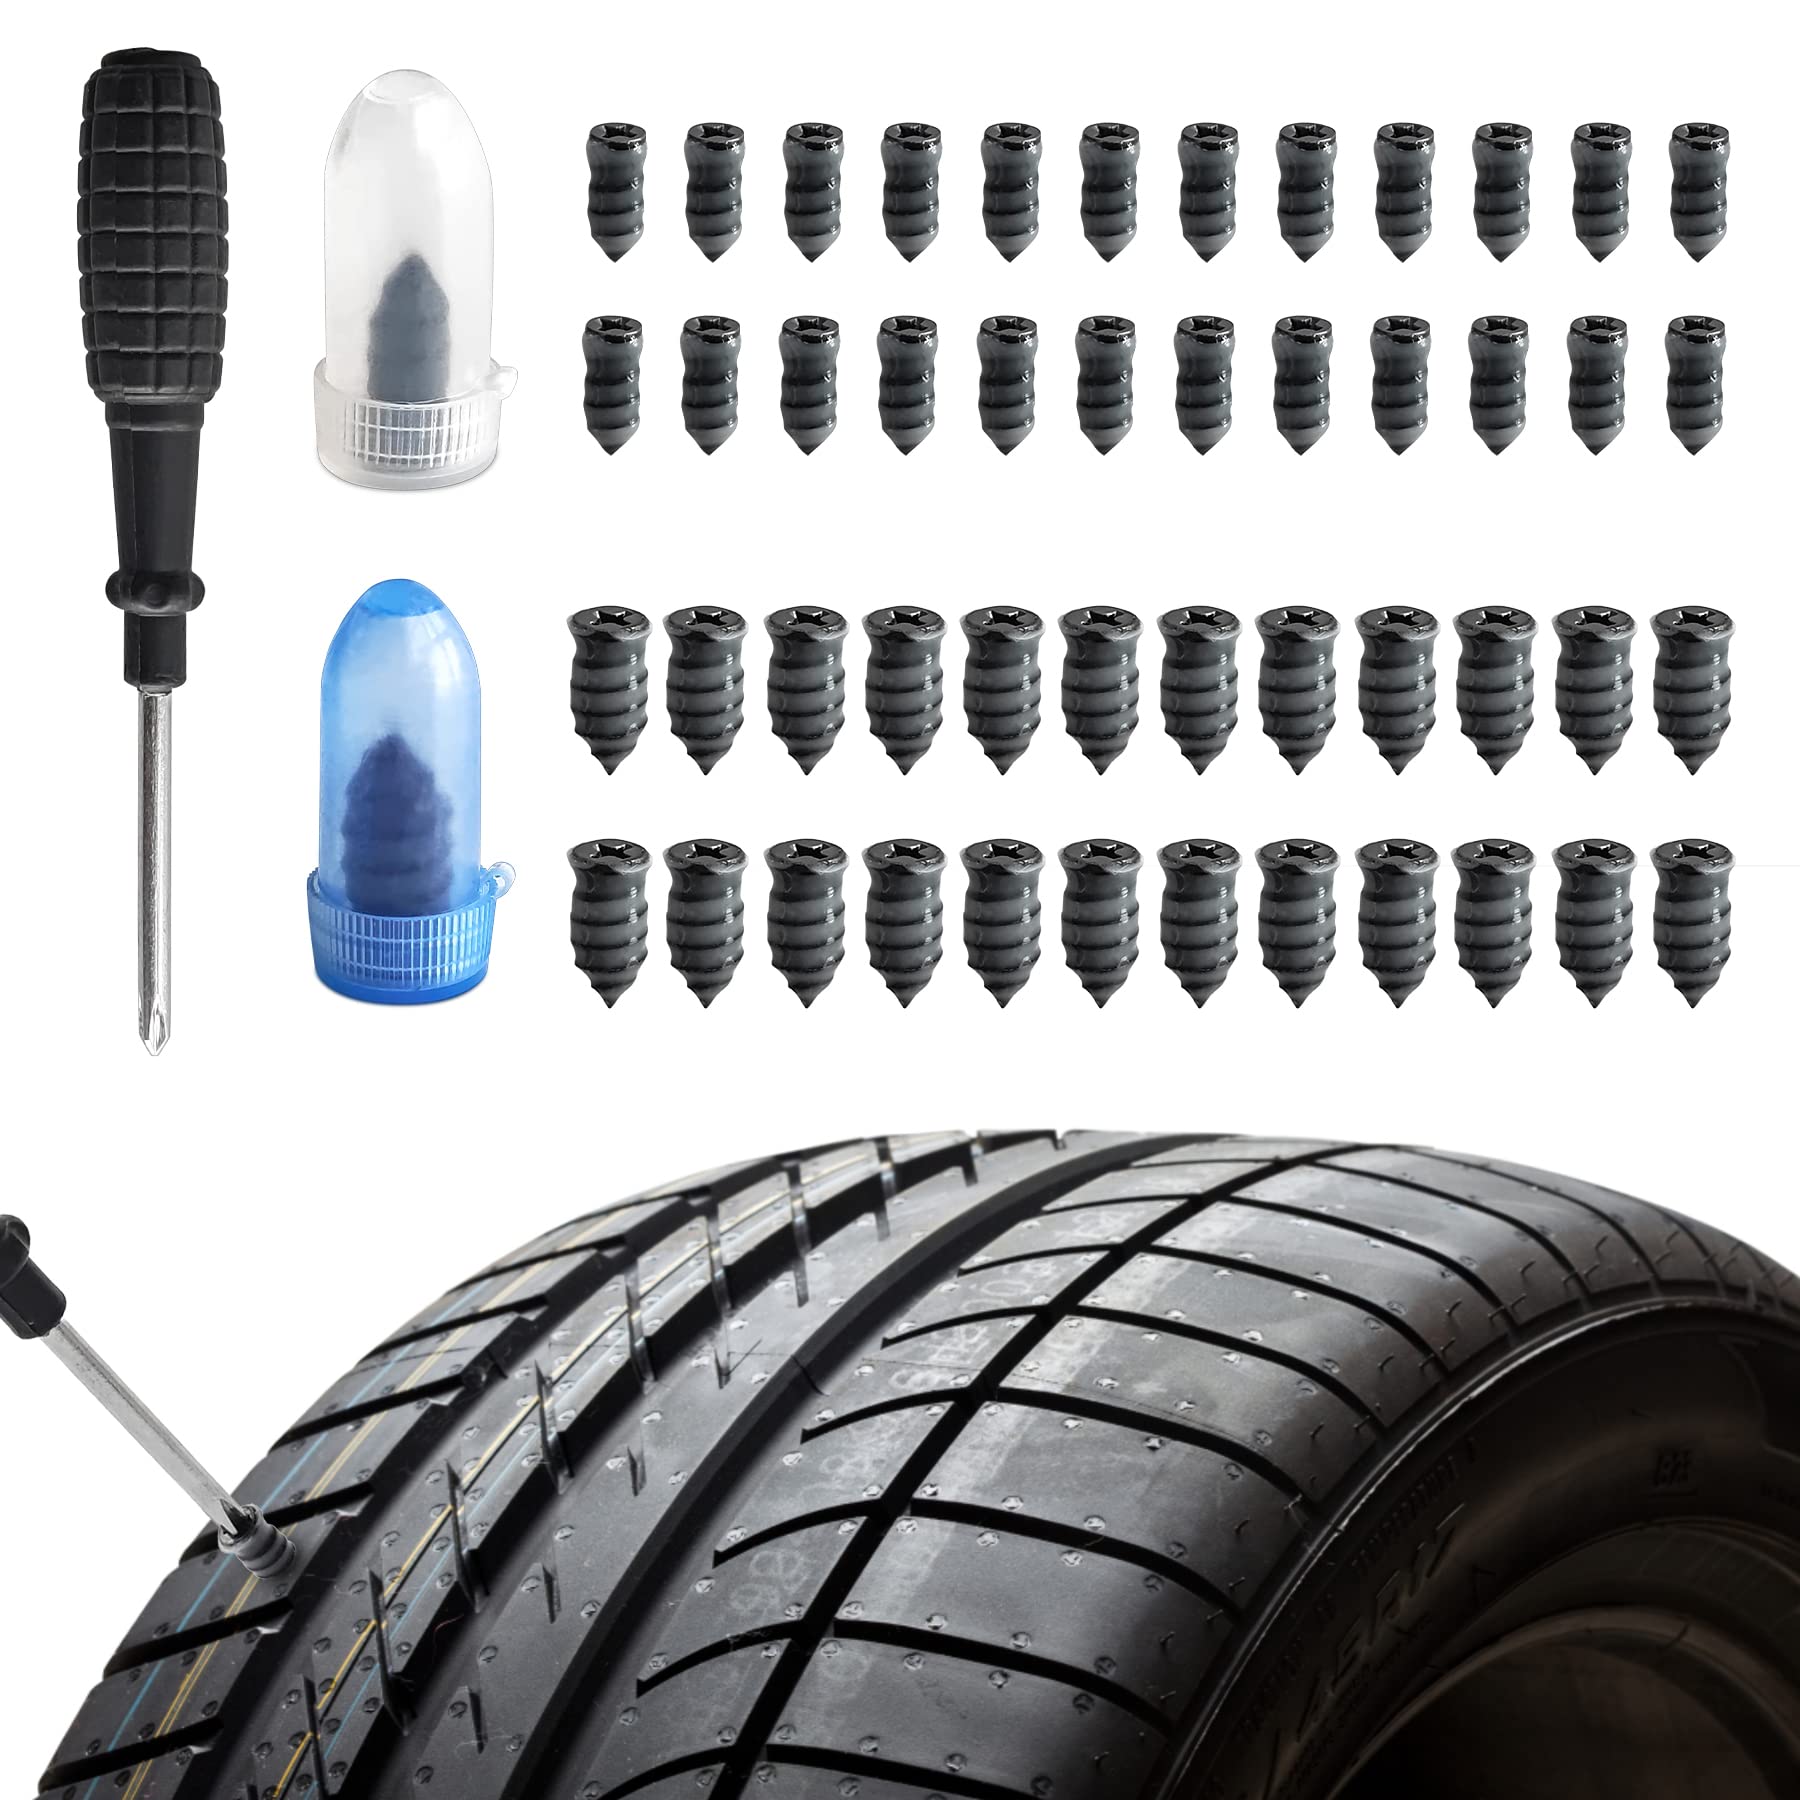 Brelet 50-teiliges Vakuum-Reifen-Reparatur-Set, Gummi-Reifen-Reparatur-Set, gewickelte Gumminägel, inklusive Schraubendreher, für Autos, Motorräder, LKWs und Fahrräder (25S+25L) (25S+25L) von Brelet